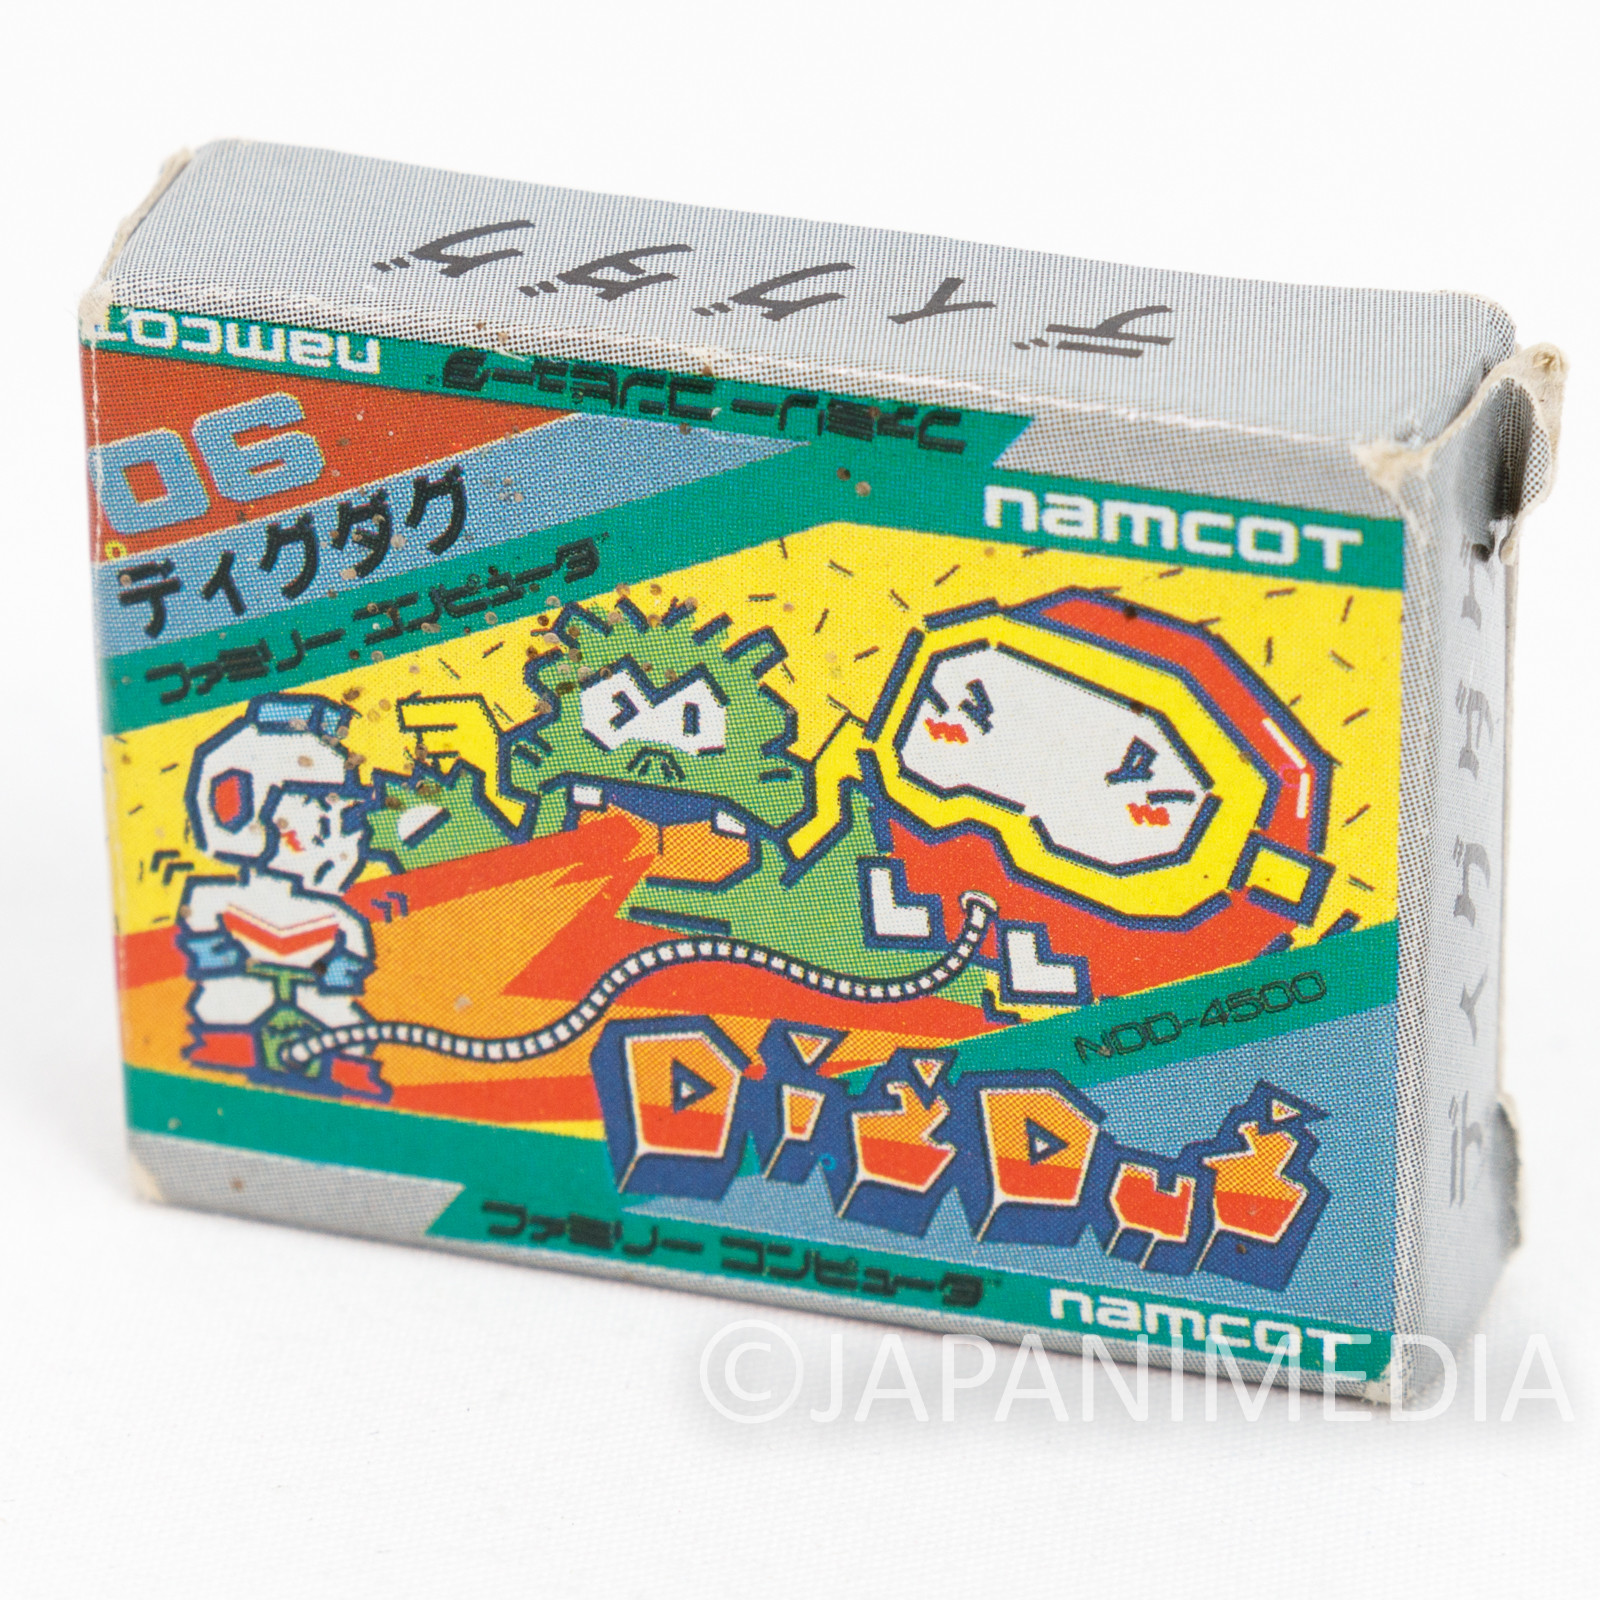 Dig Dug Cassette Mini Eraser AMADA JAPAN FAMICOM NES NAMCO Nintendo